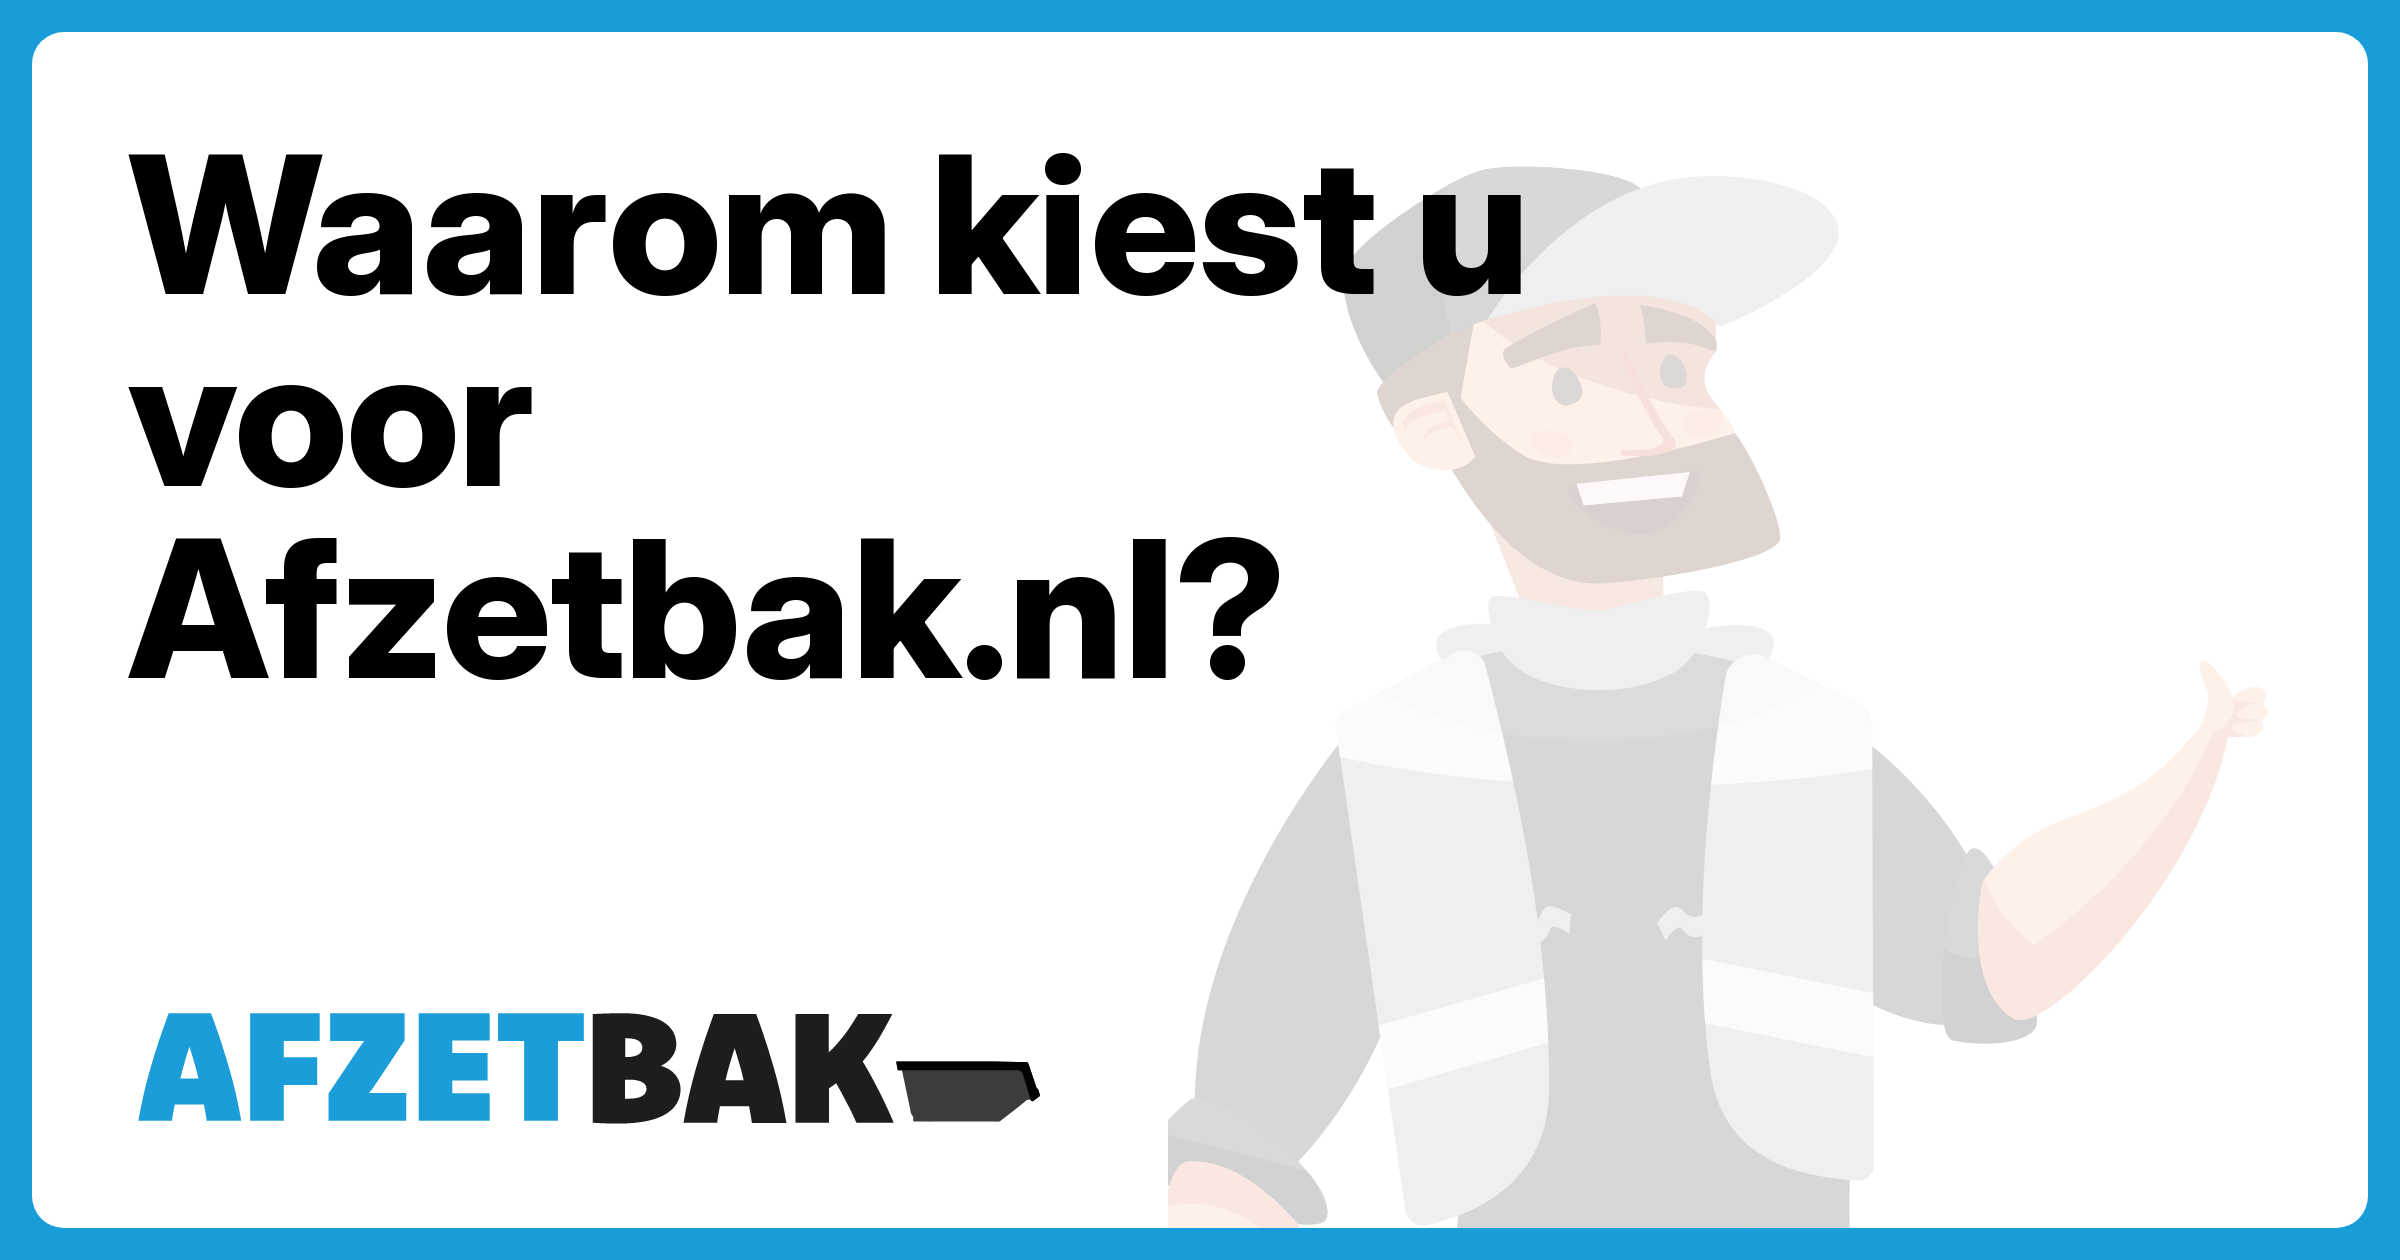 Waarom kiest u voor Afzetbak.nl? - Afzetbak.nl